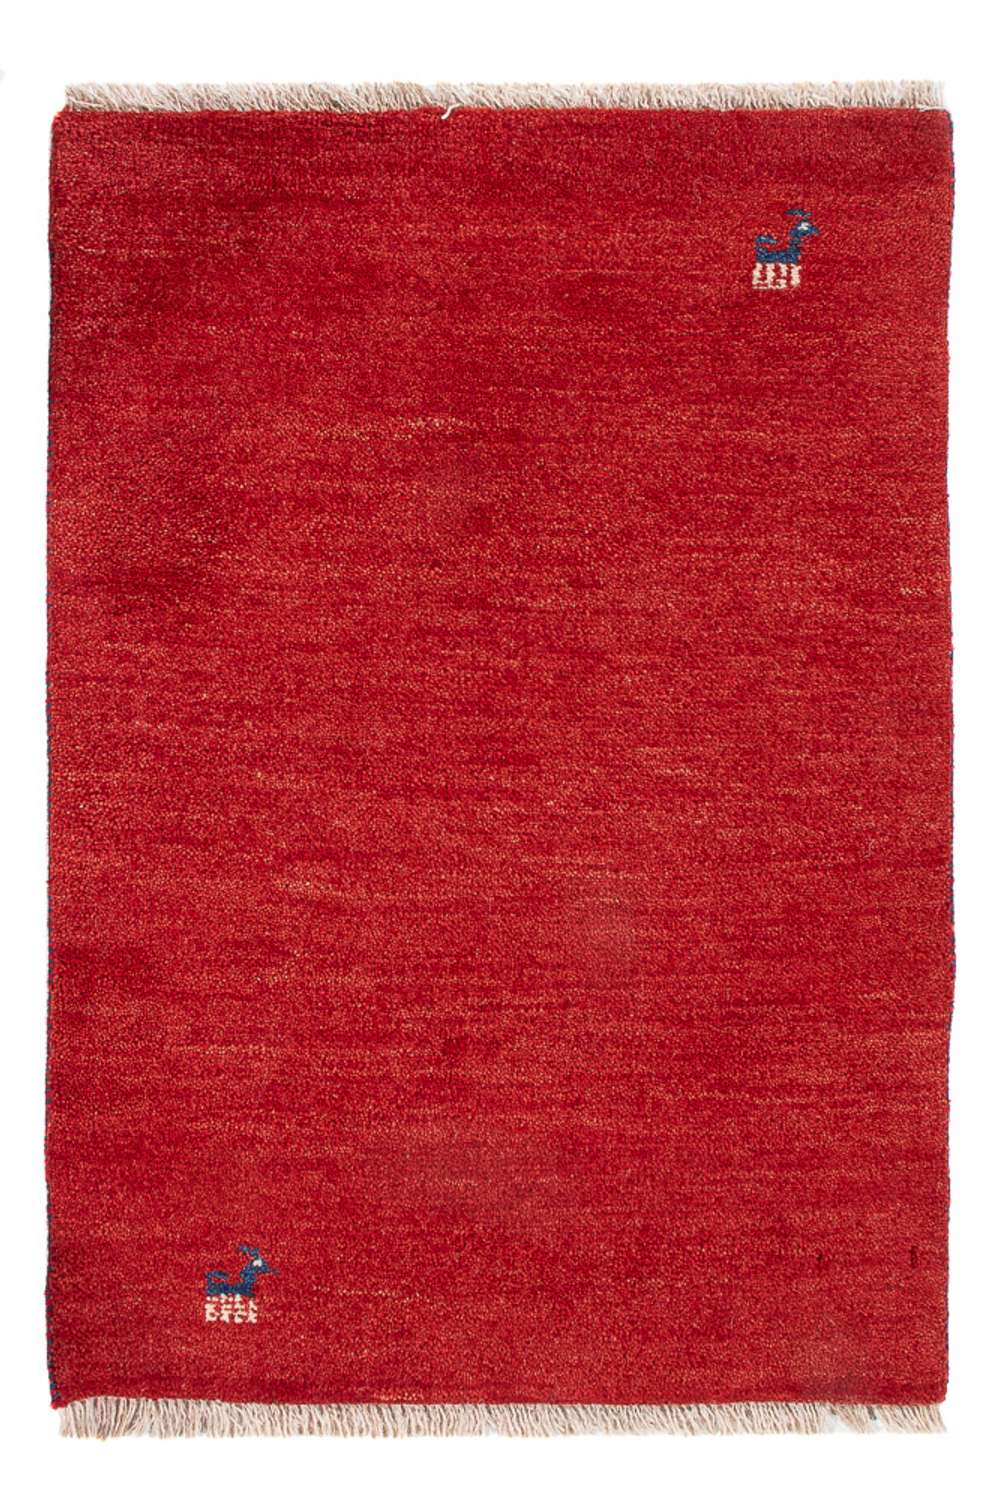 Gabbeh tapijt - Perzisch - 87 x 60 cm - rood